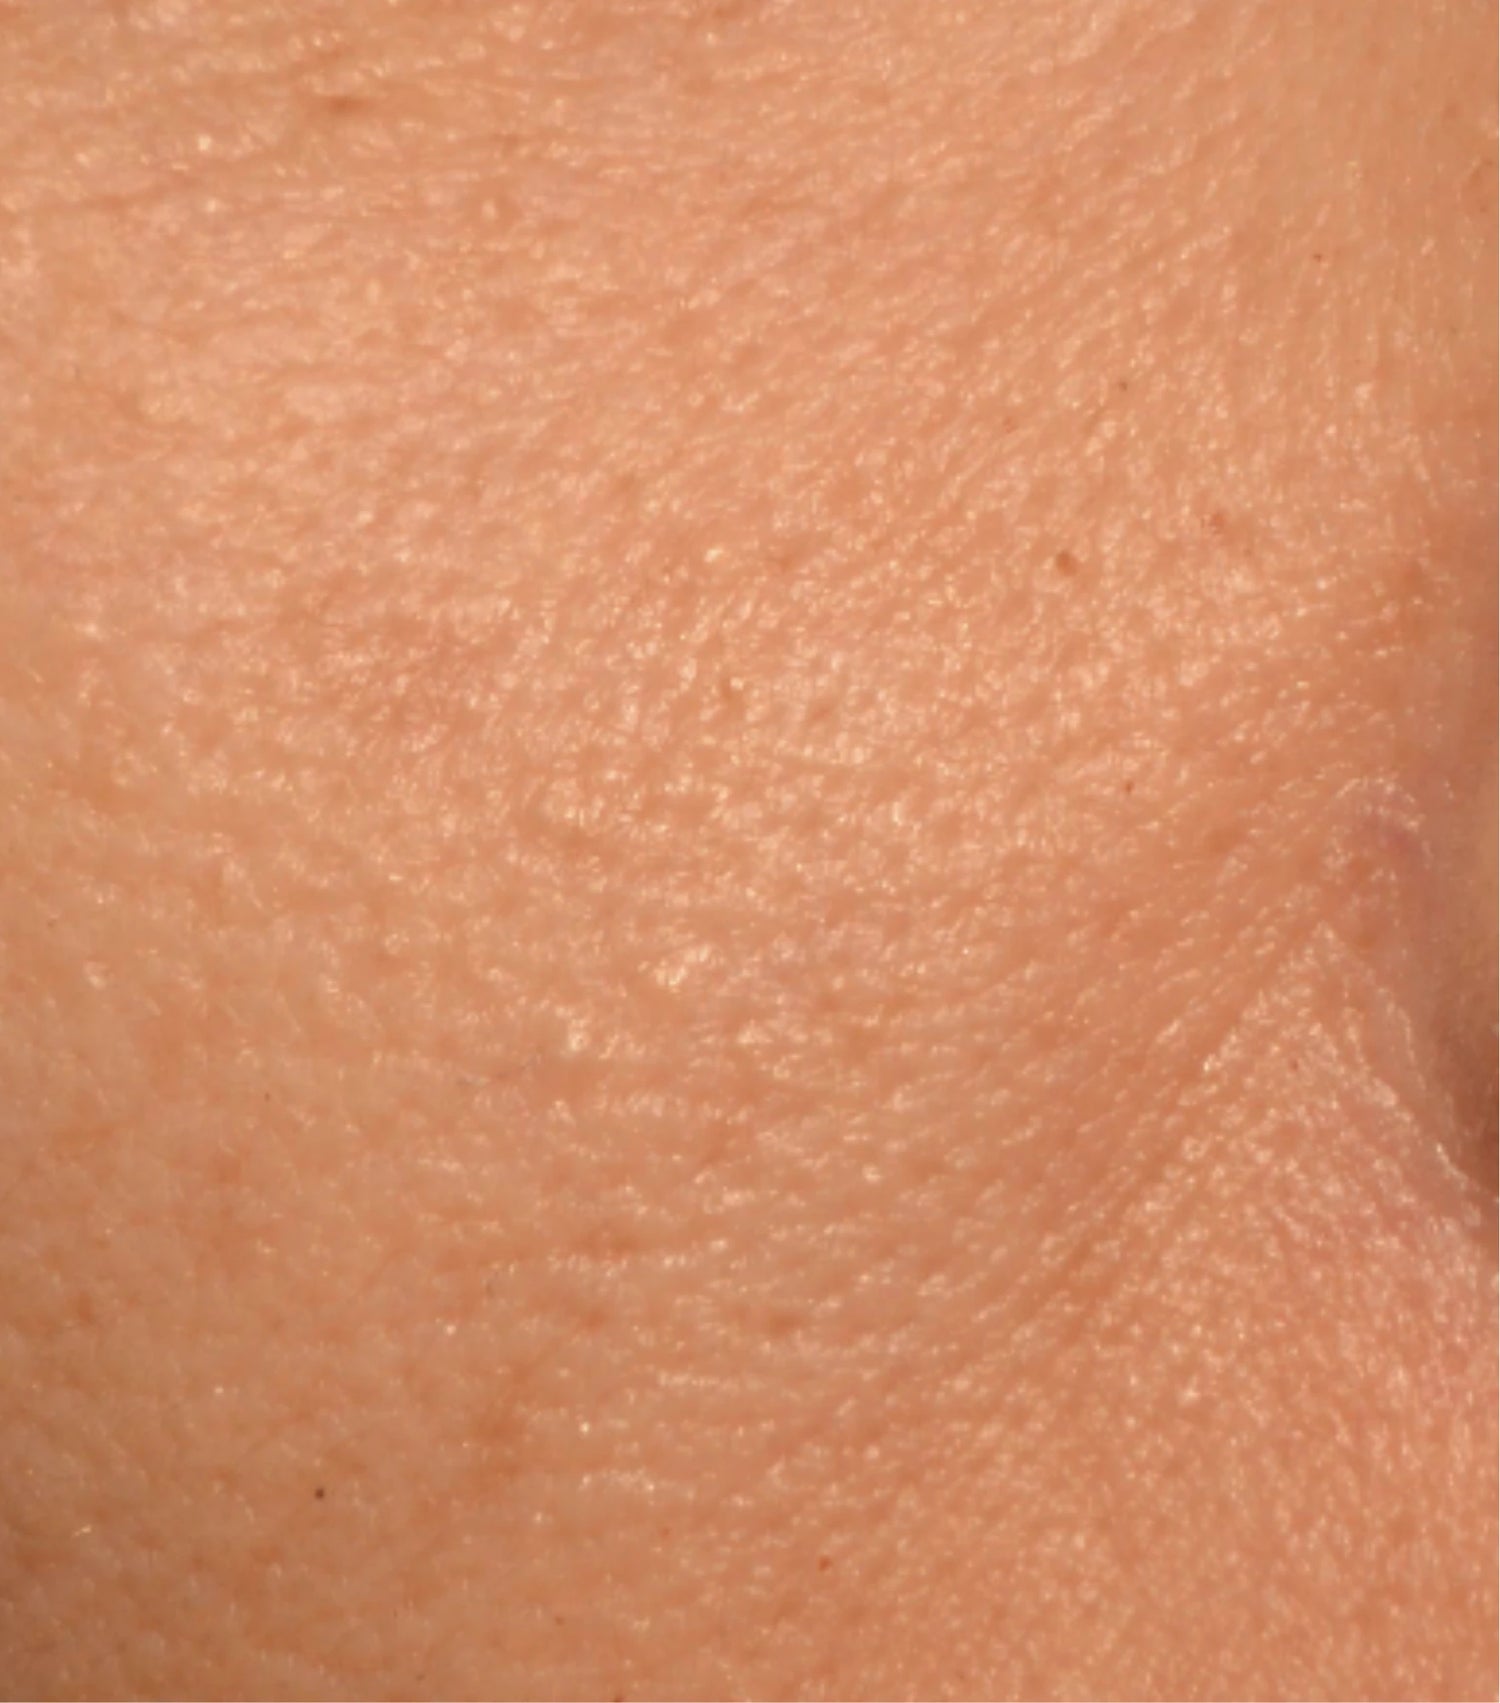 Image comparisons diamètre des pores (après)